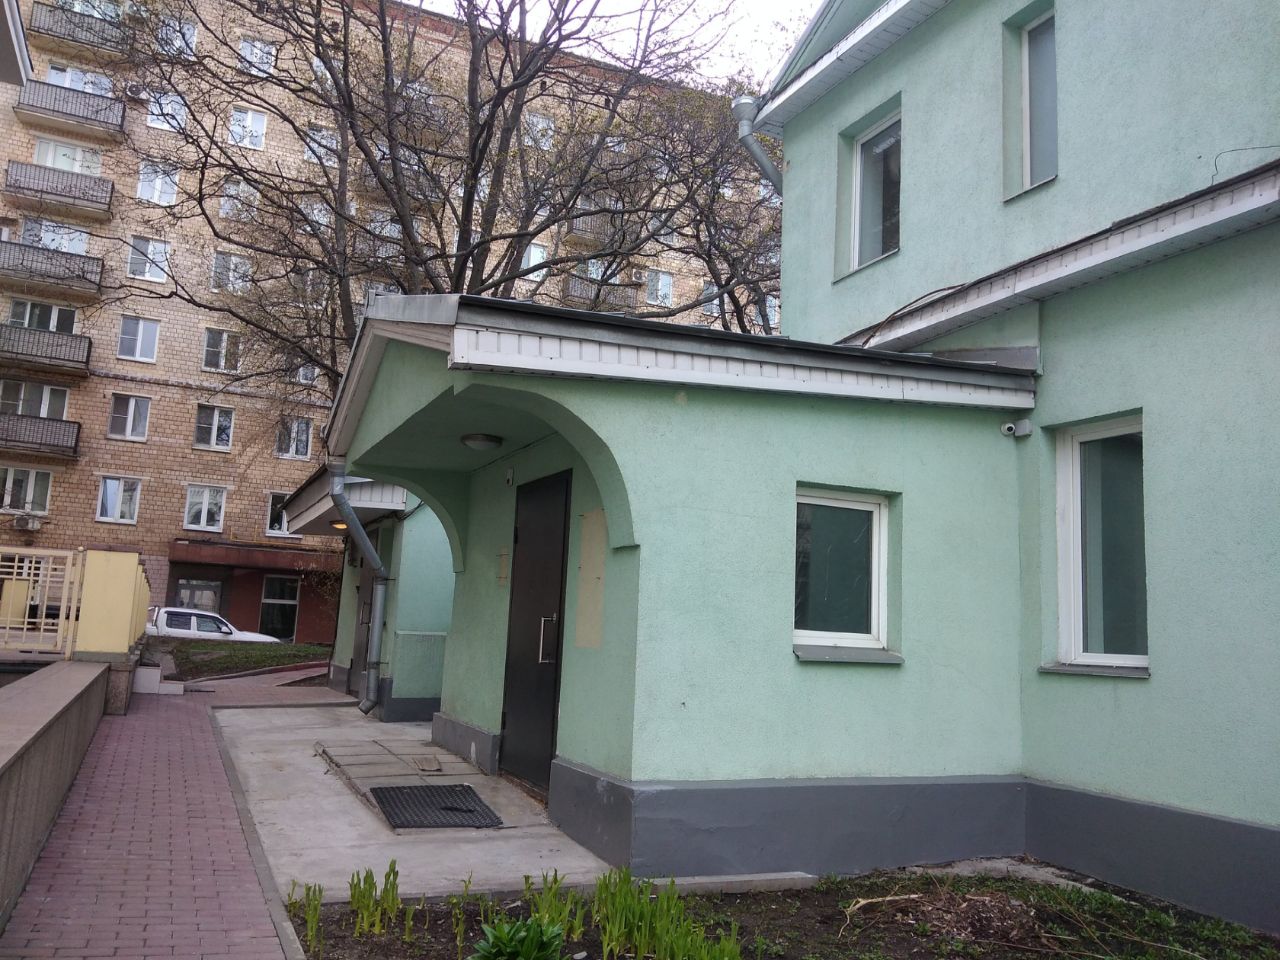 аренда помещений в БЦ на ул. Большая Ордынка, 54с1